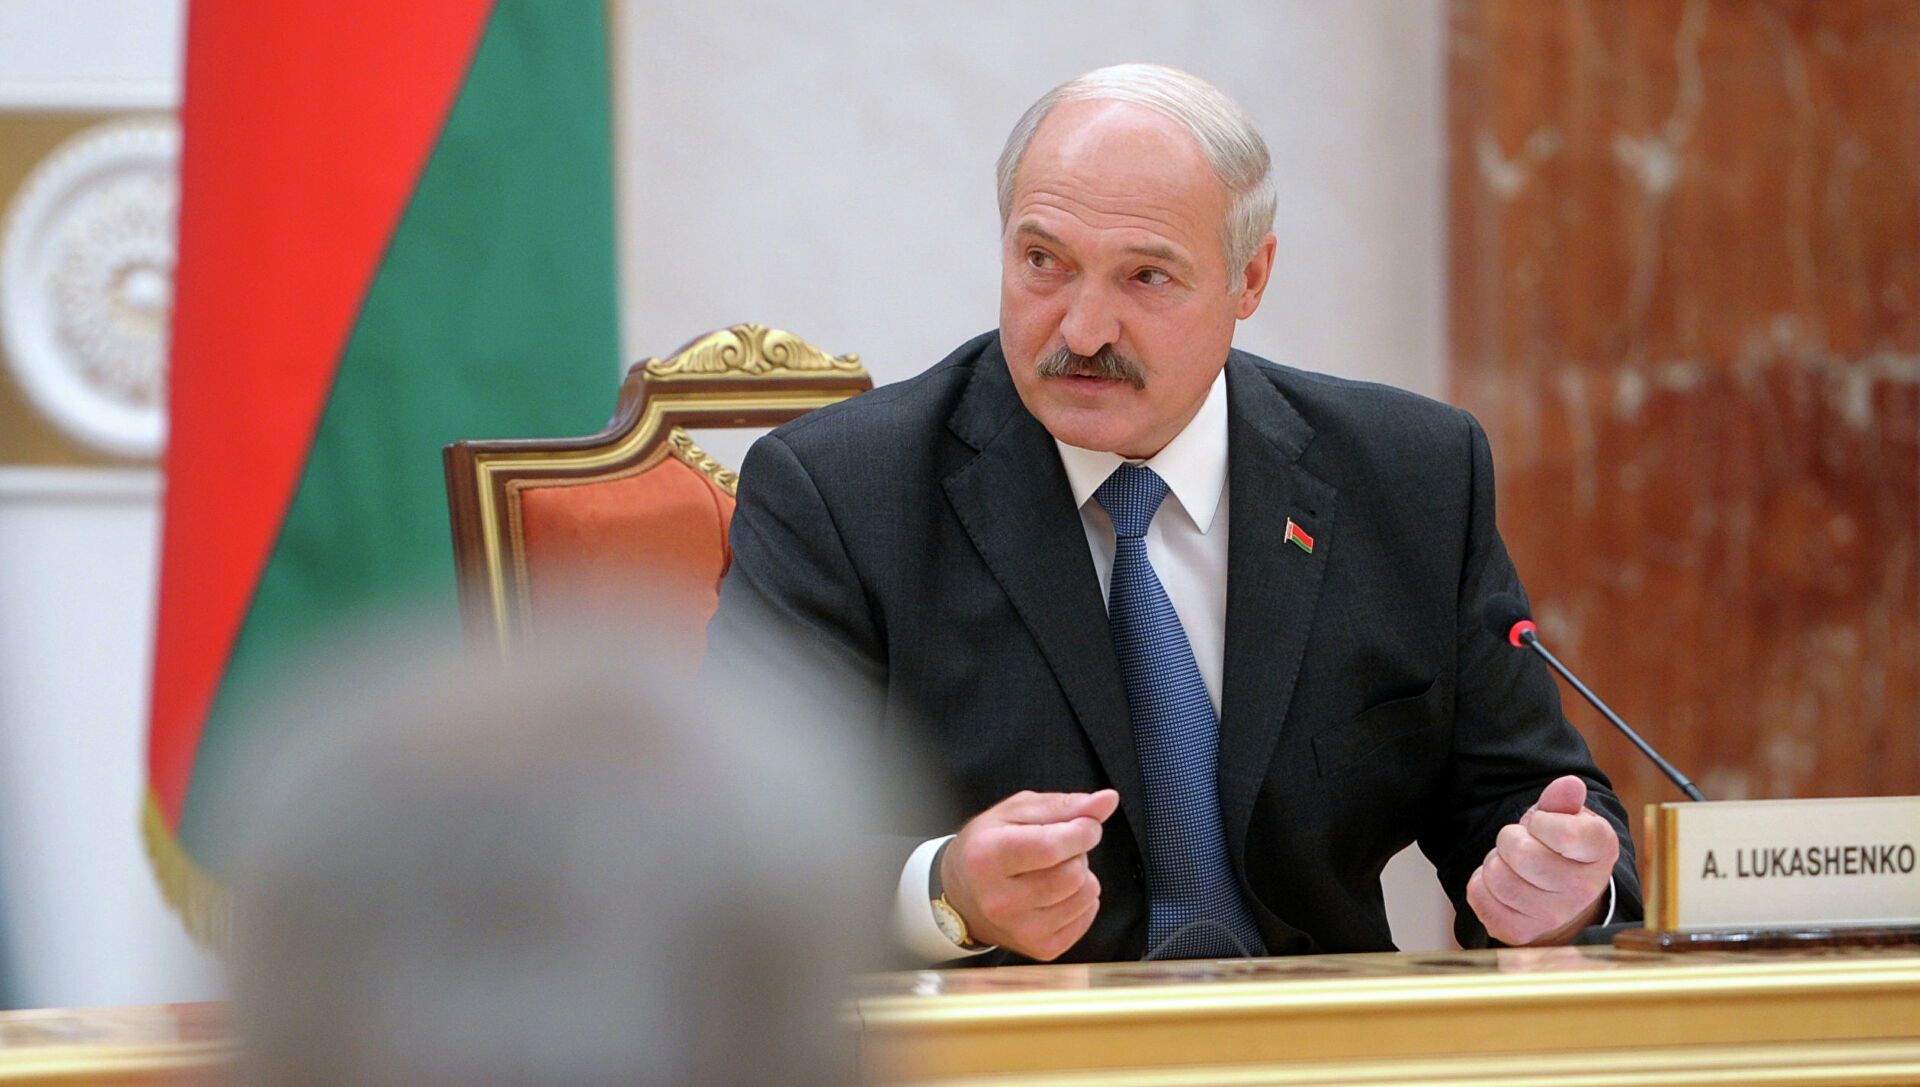 Лукашенко: мы увлеклись либерализацией законодательства